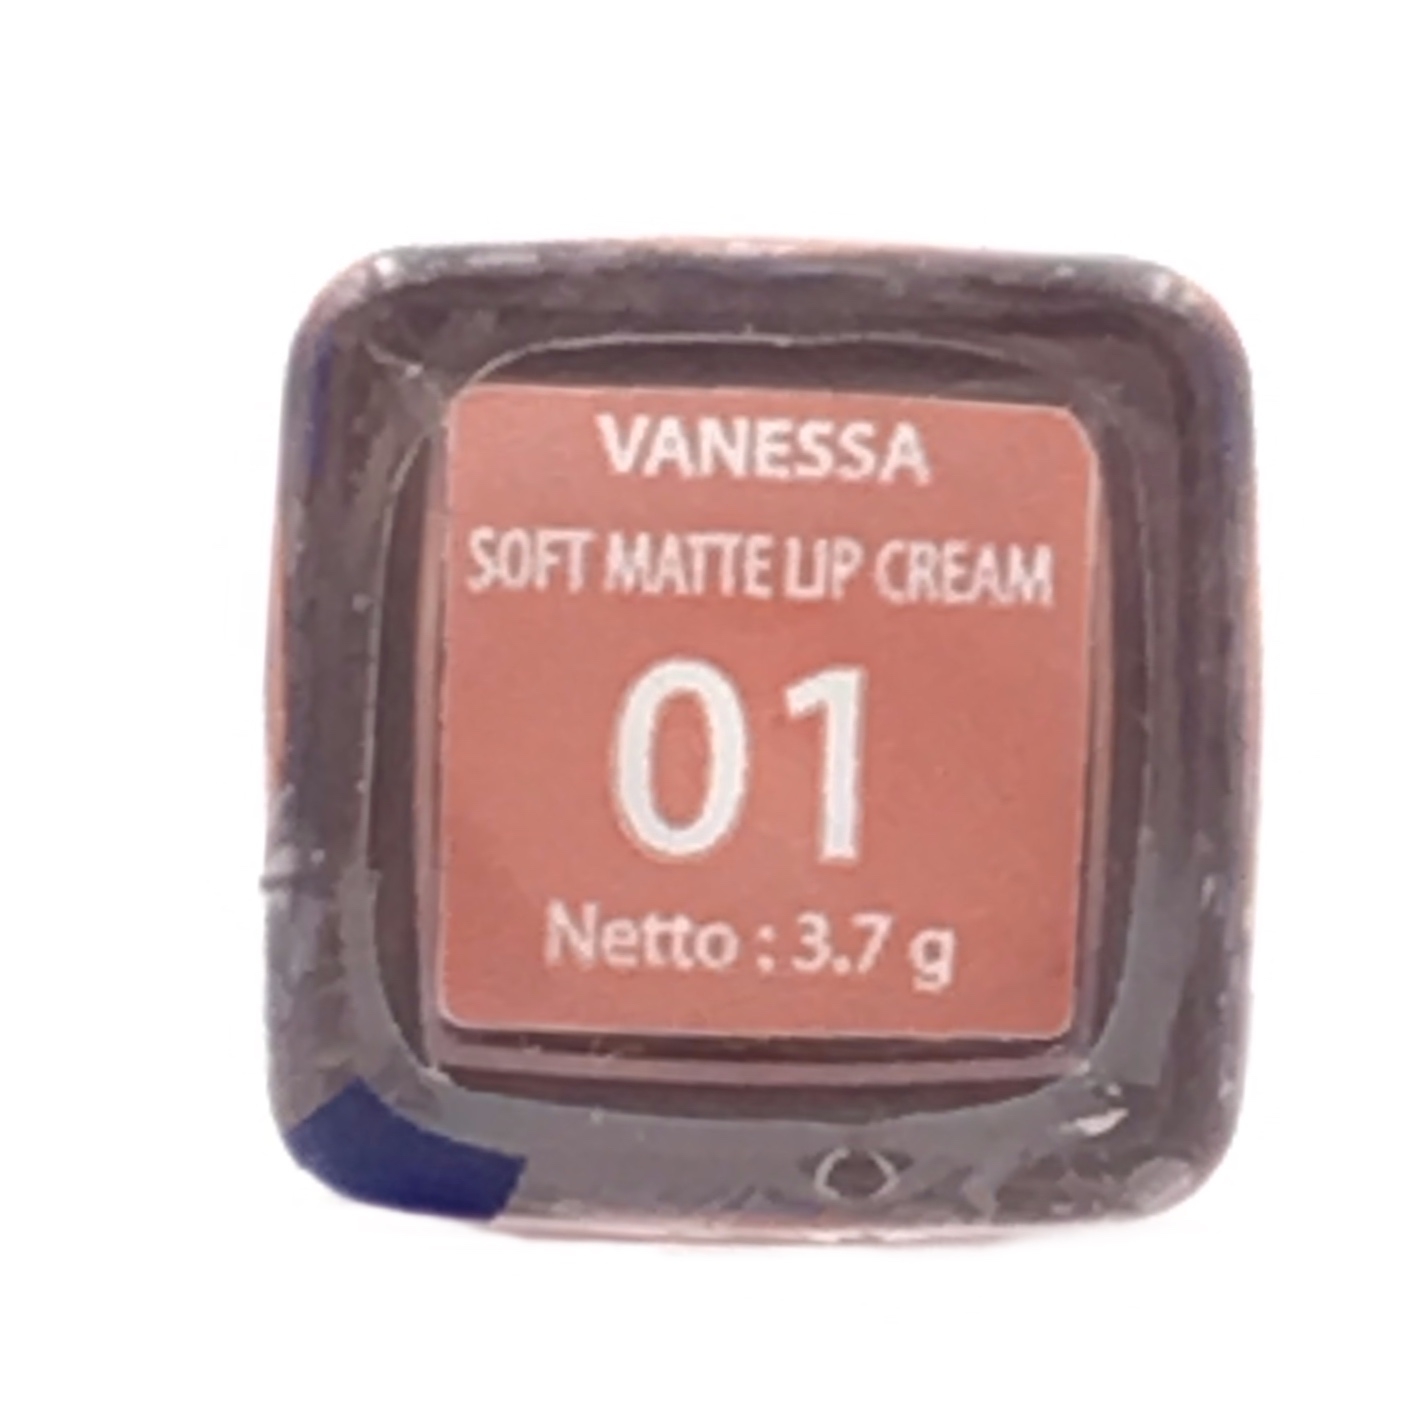 Marcks' Venus Soft Matte Lip Cream Vanessa 01 Lips	